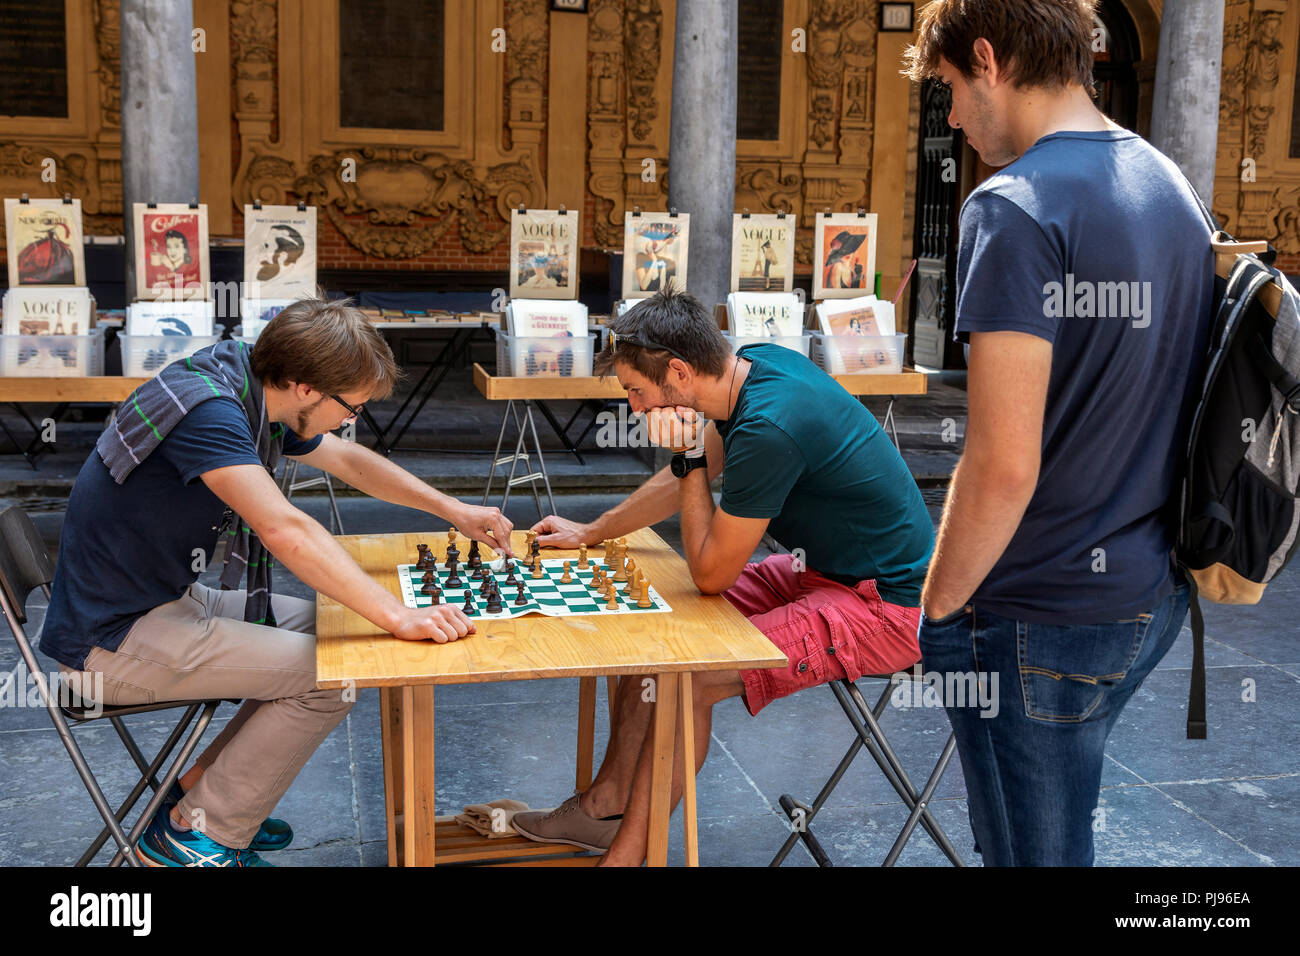 Deux hommes jouant aux échecs dans le vieux livre, musique et marché d'antiquités, tenue à Vielle Bourse de Lille, Place du Général de Gaulle, Lille, France Banque D'Images